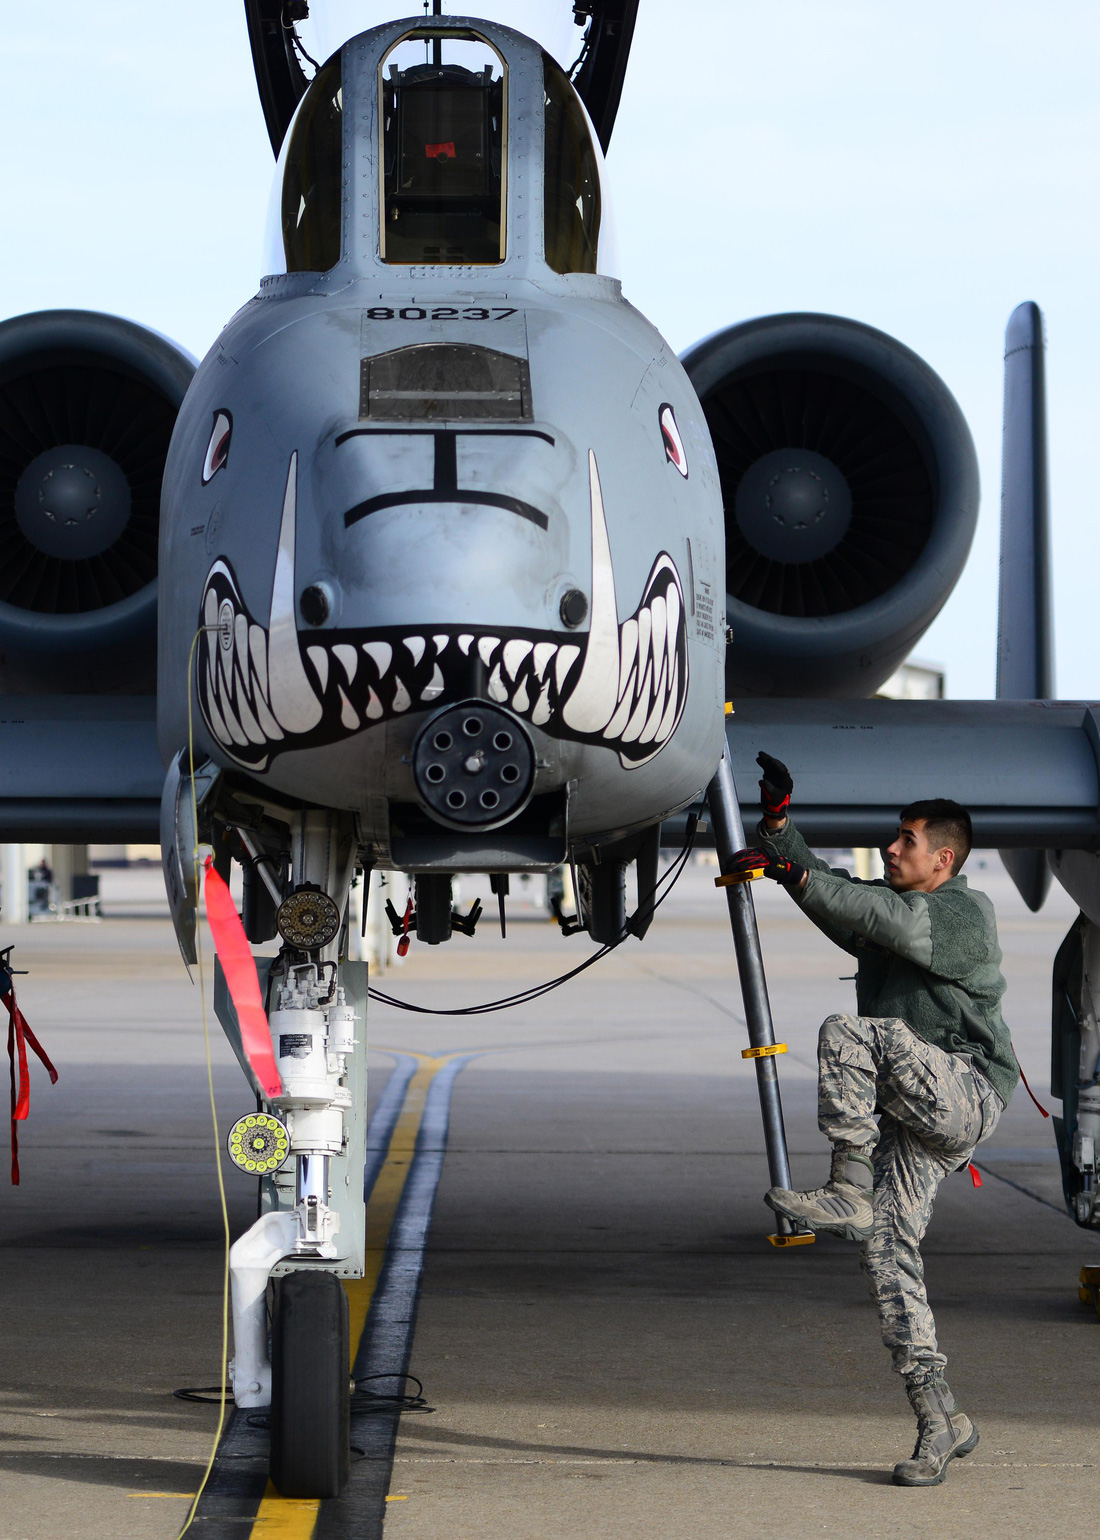 Xem ‘Airshow’ ở căn cứ không lực Hoa Kỳ - Ảnh 3.